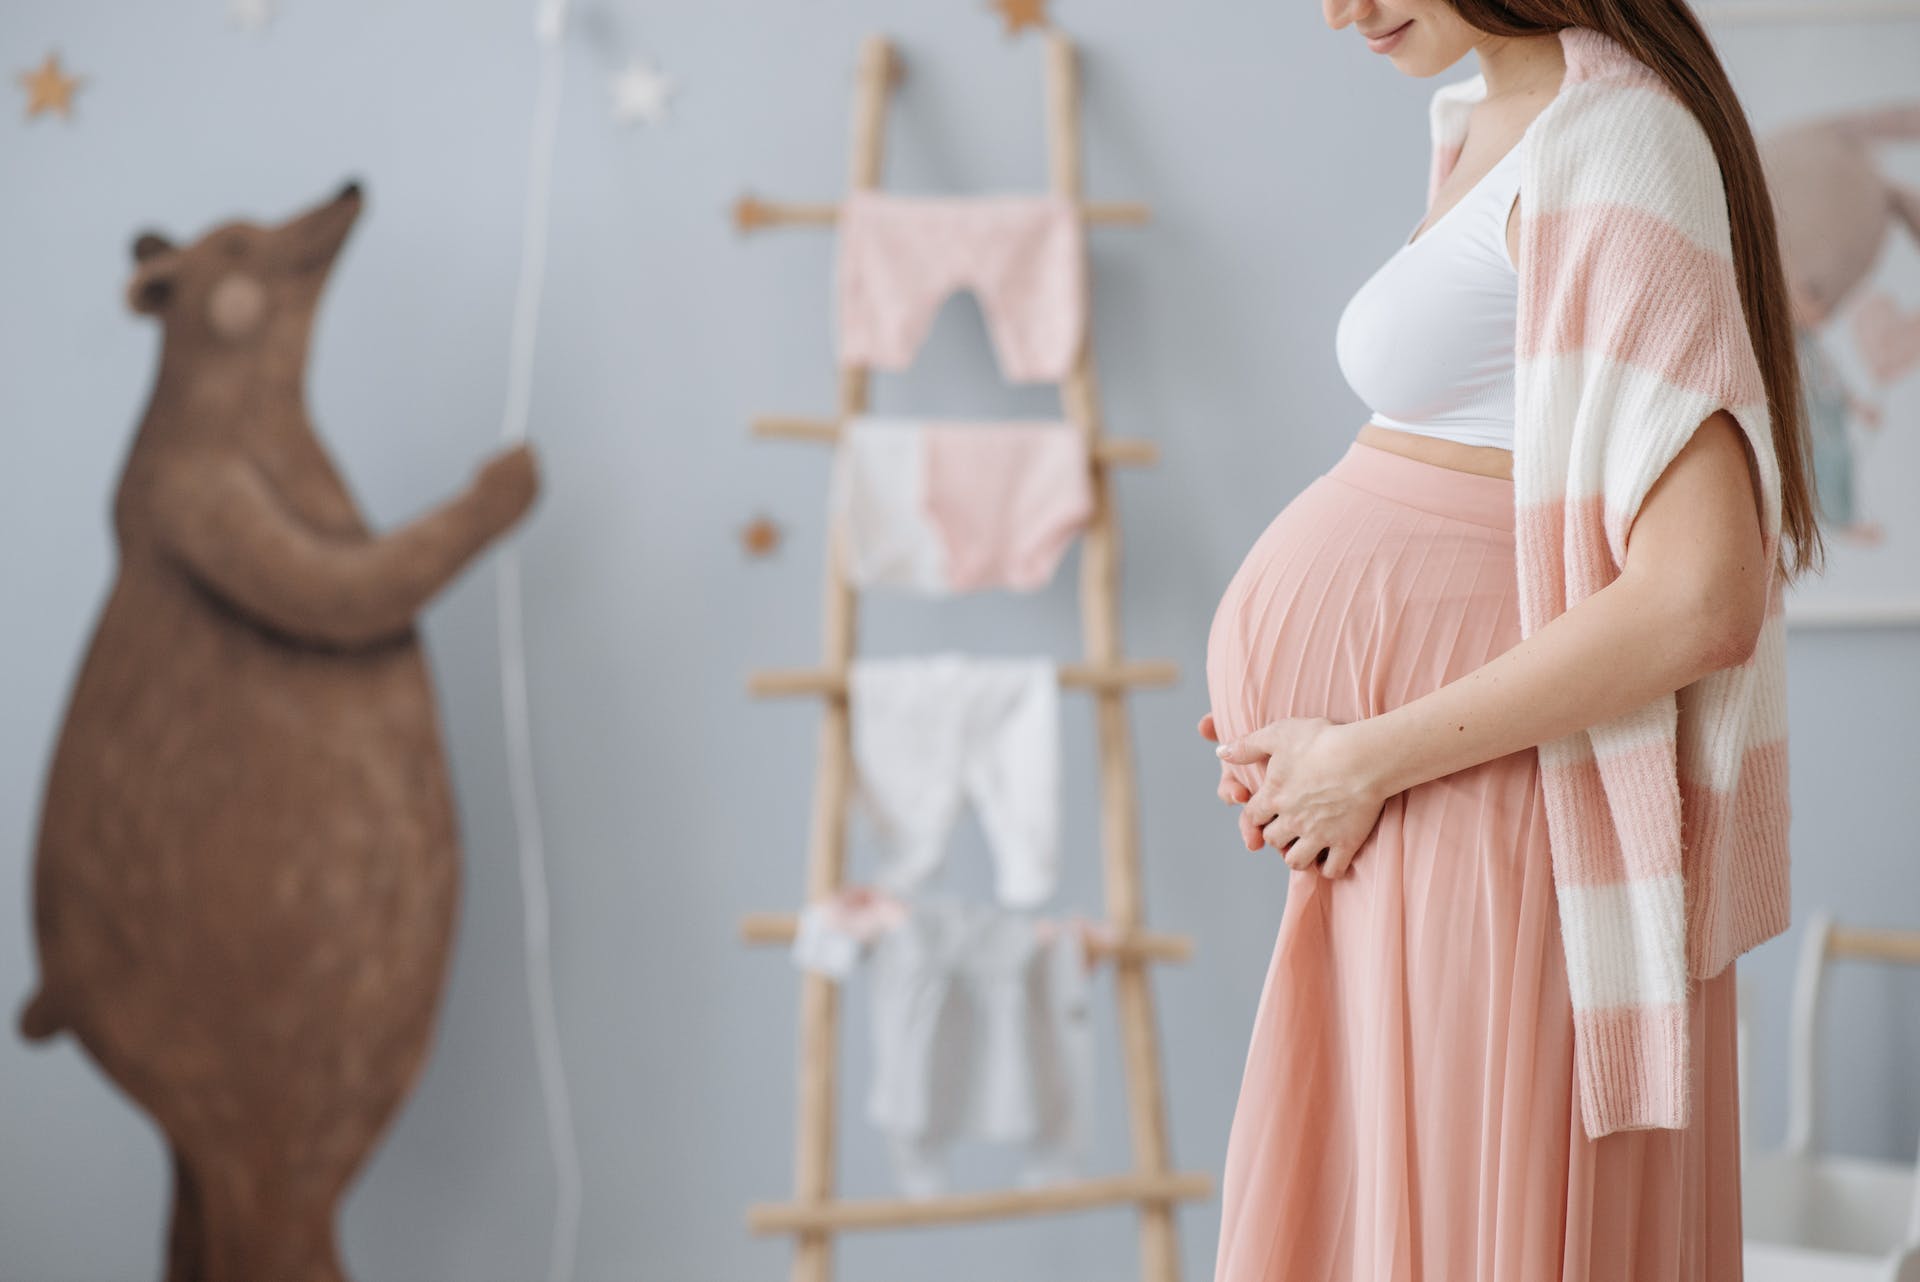 Schwangere Frau, die ihren Bauch hält | Quelle: Pexels